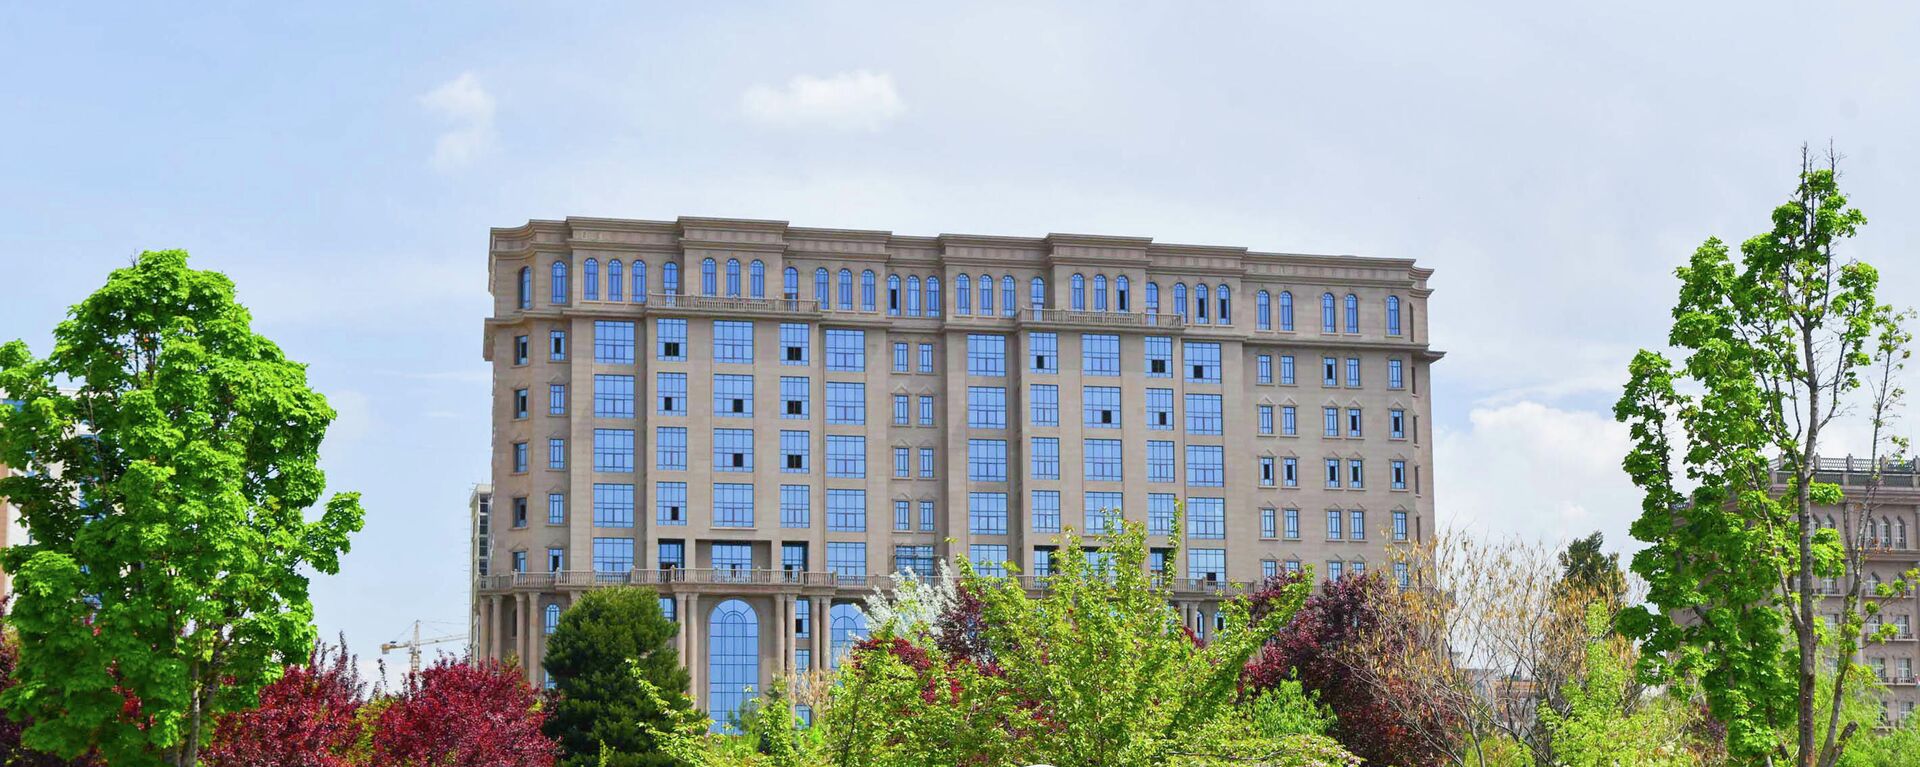 Новое здание Министерства финансов Таджикистана - Sputnik Тоҷикистон, 1920, 07.06.2021